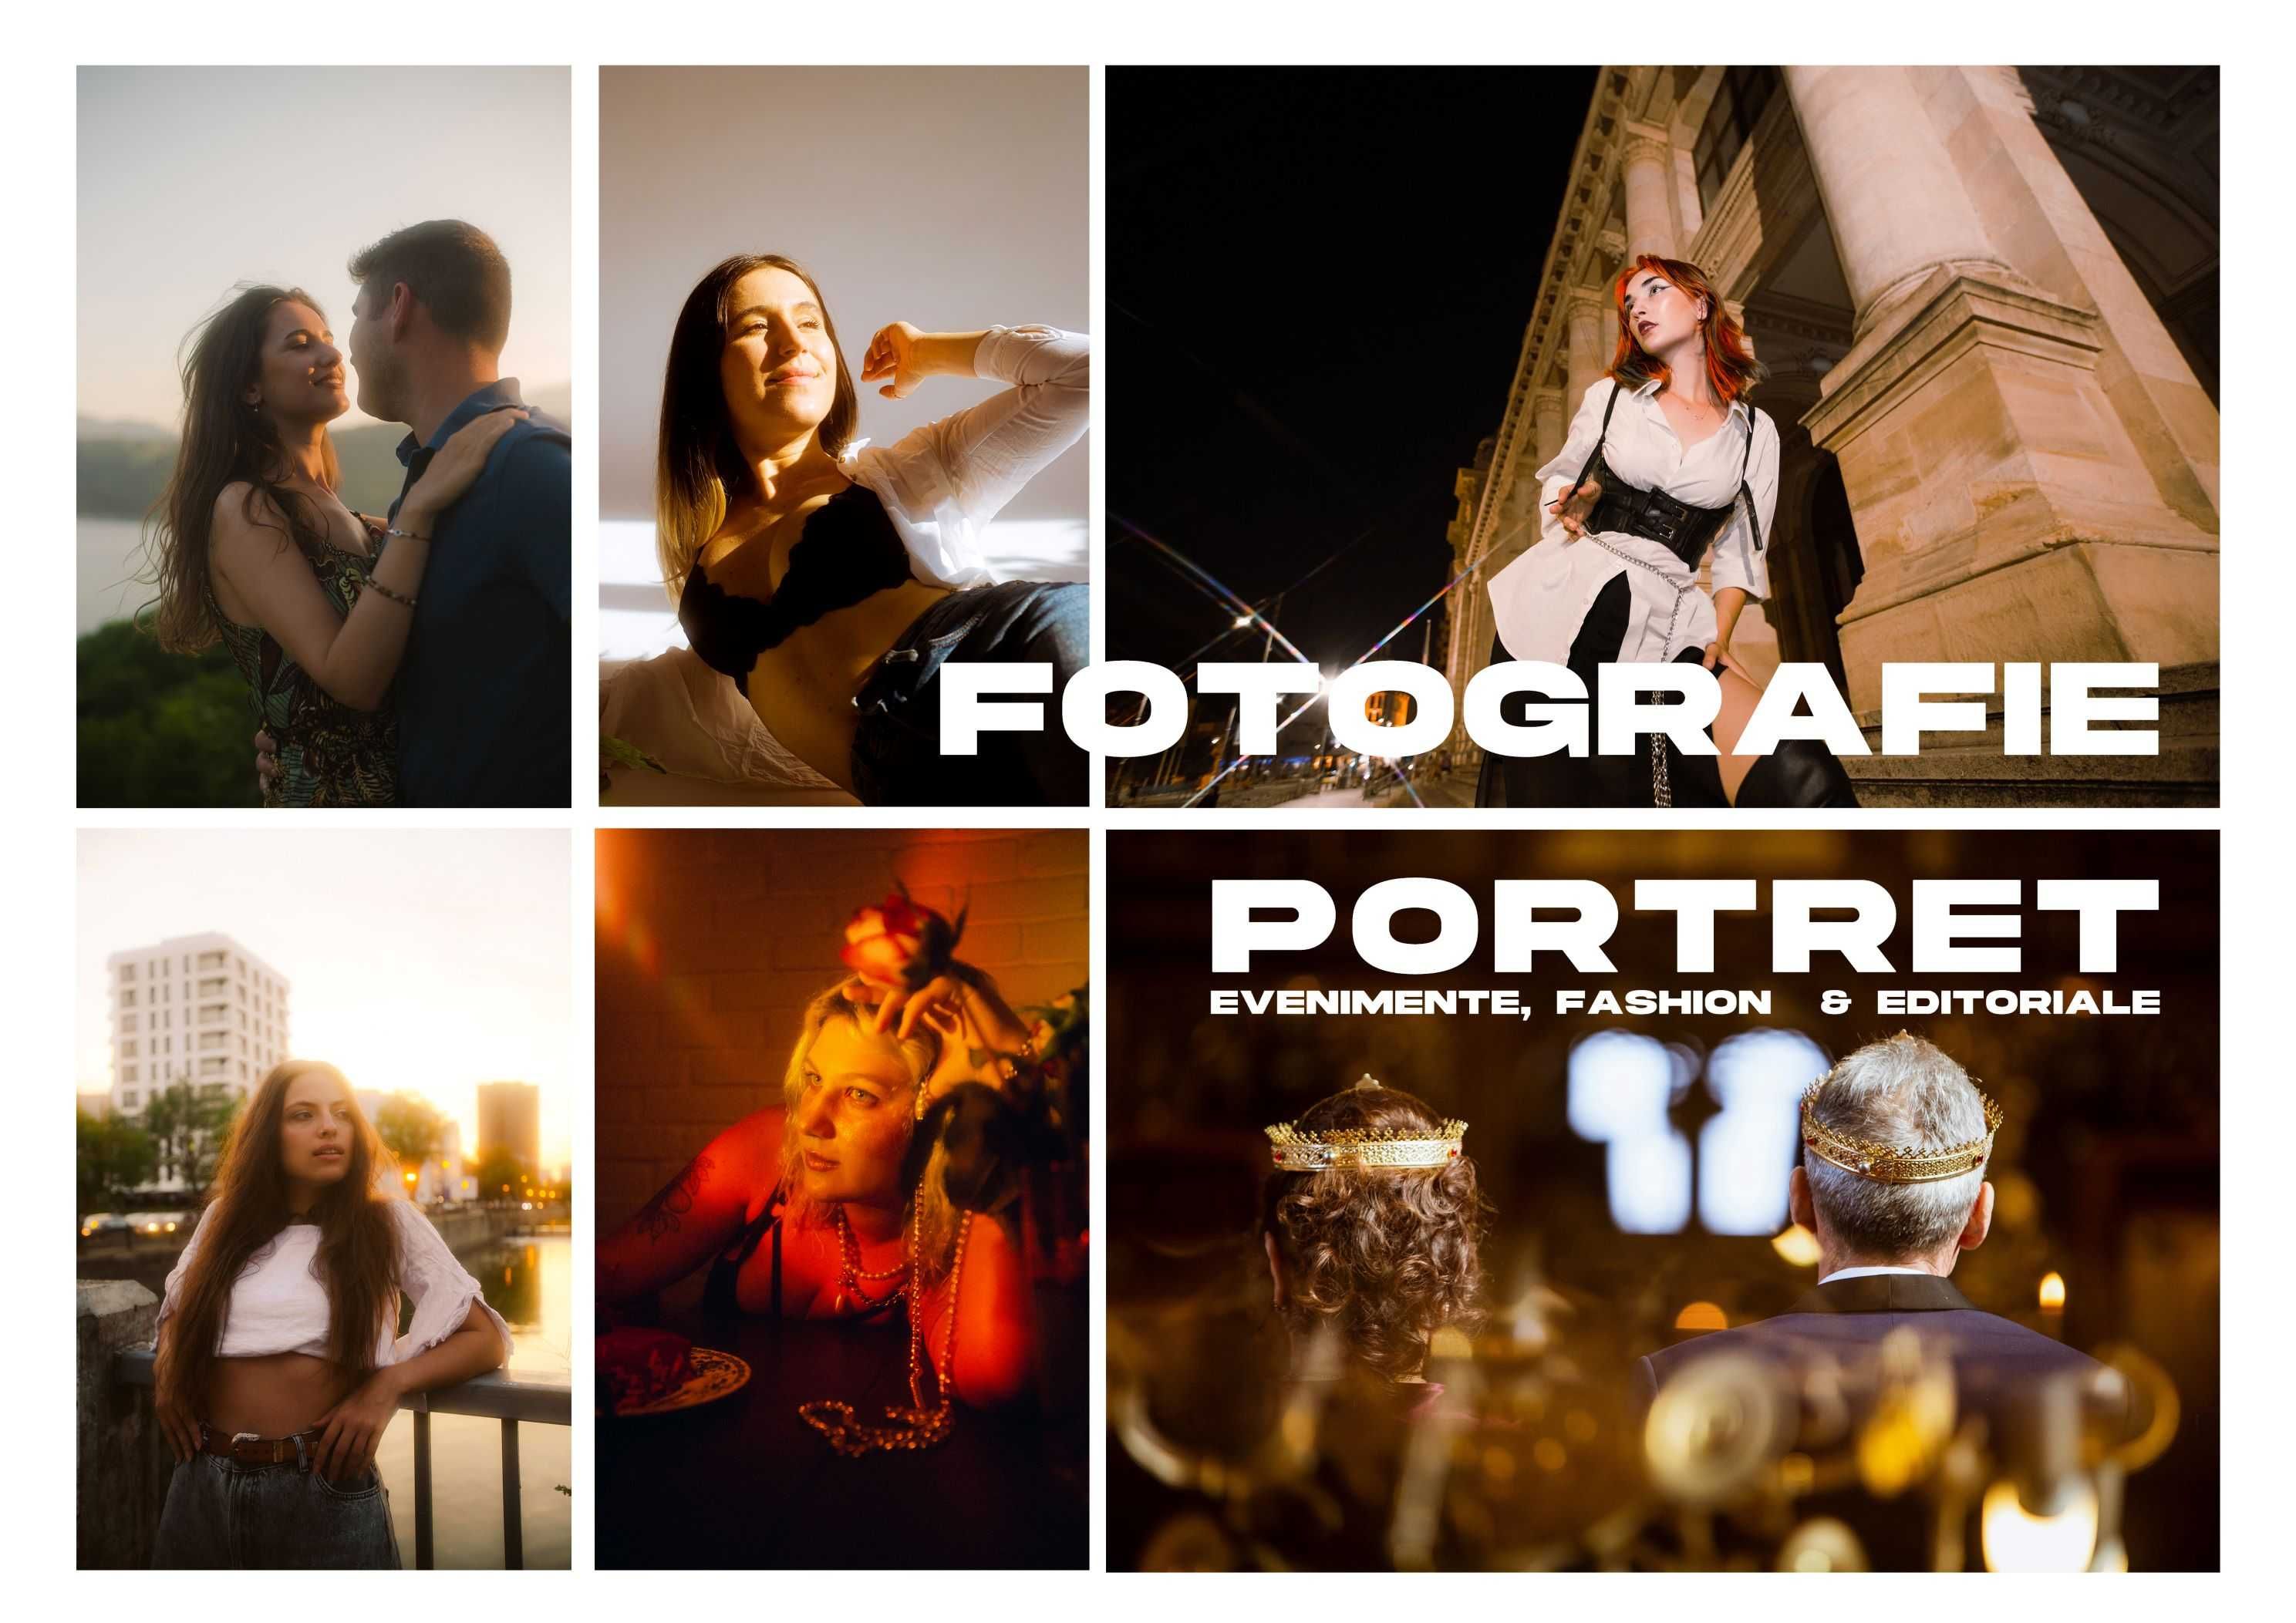 Fotograf profesionist - portrete/ evenimente/ editoriale